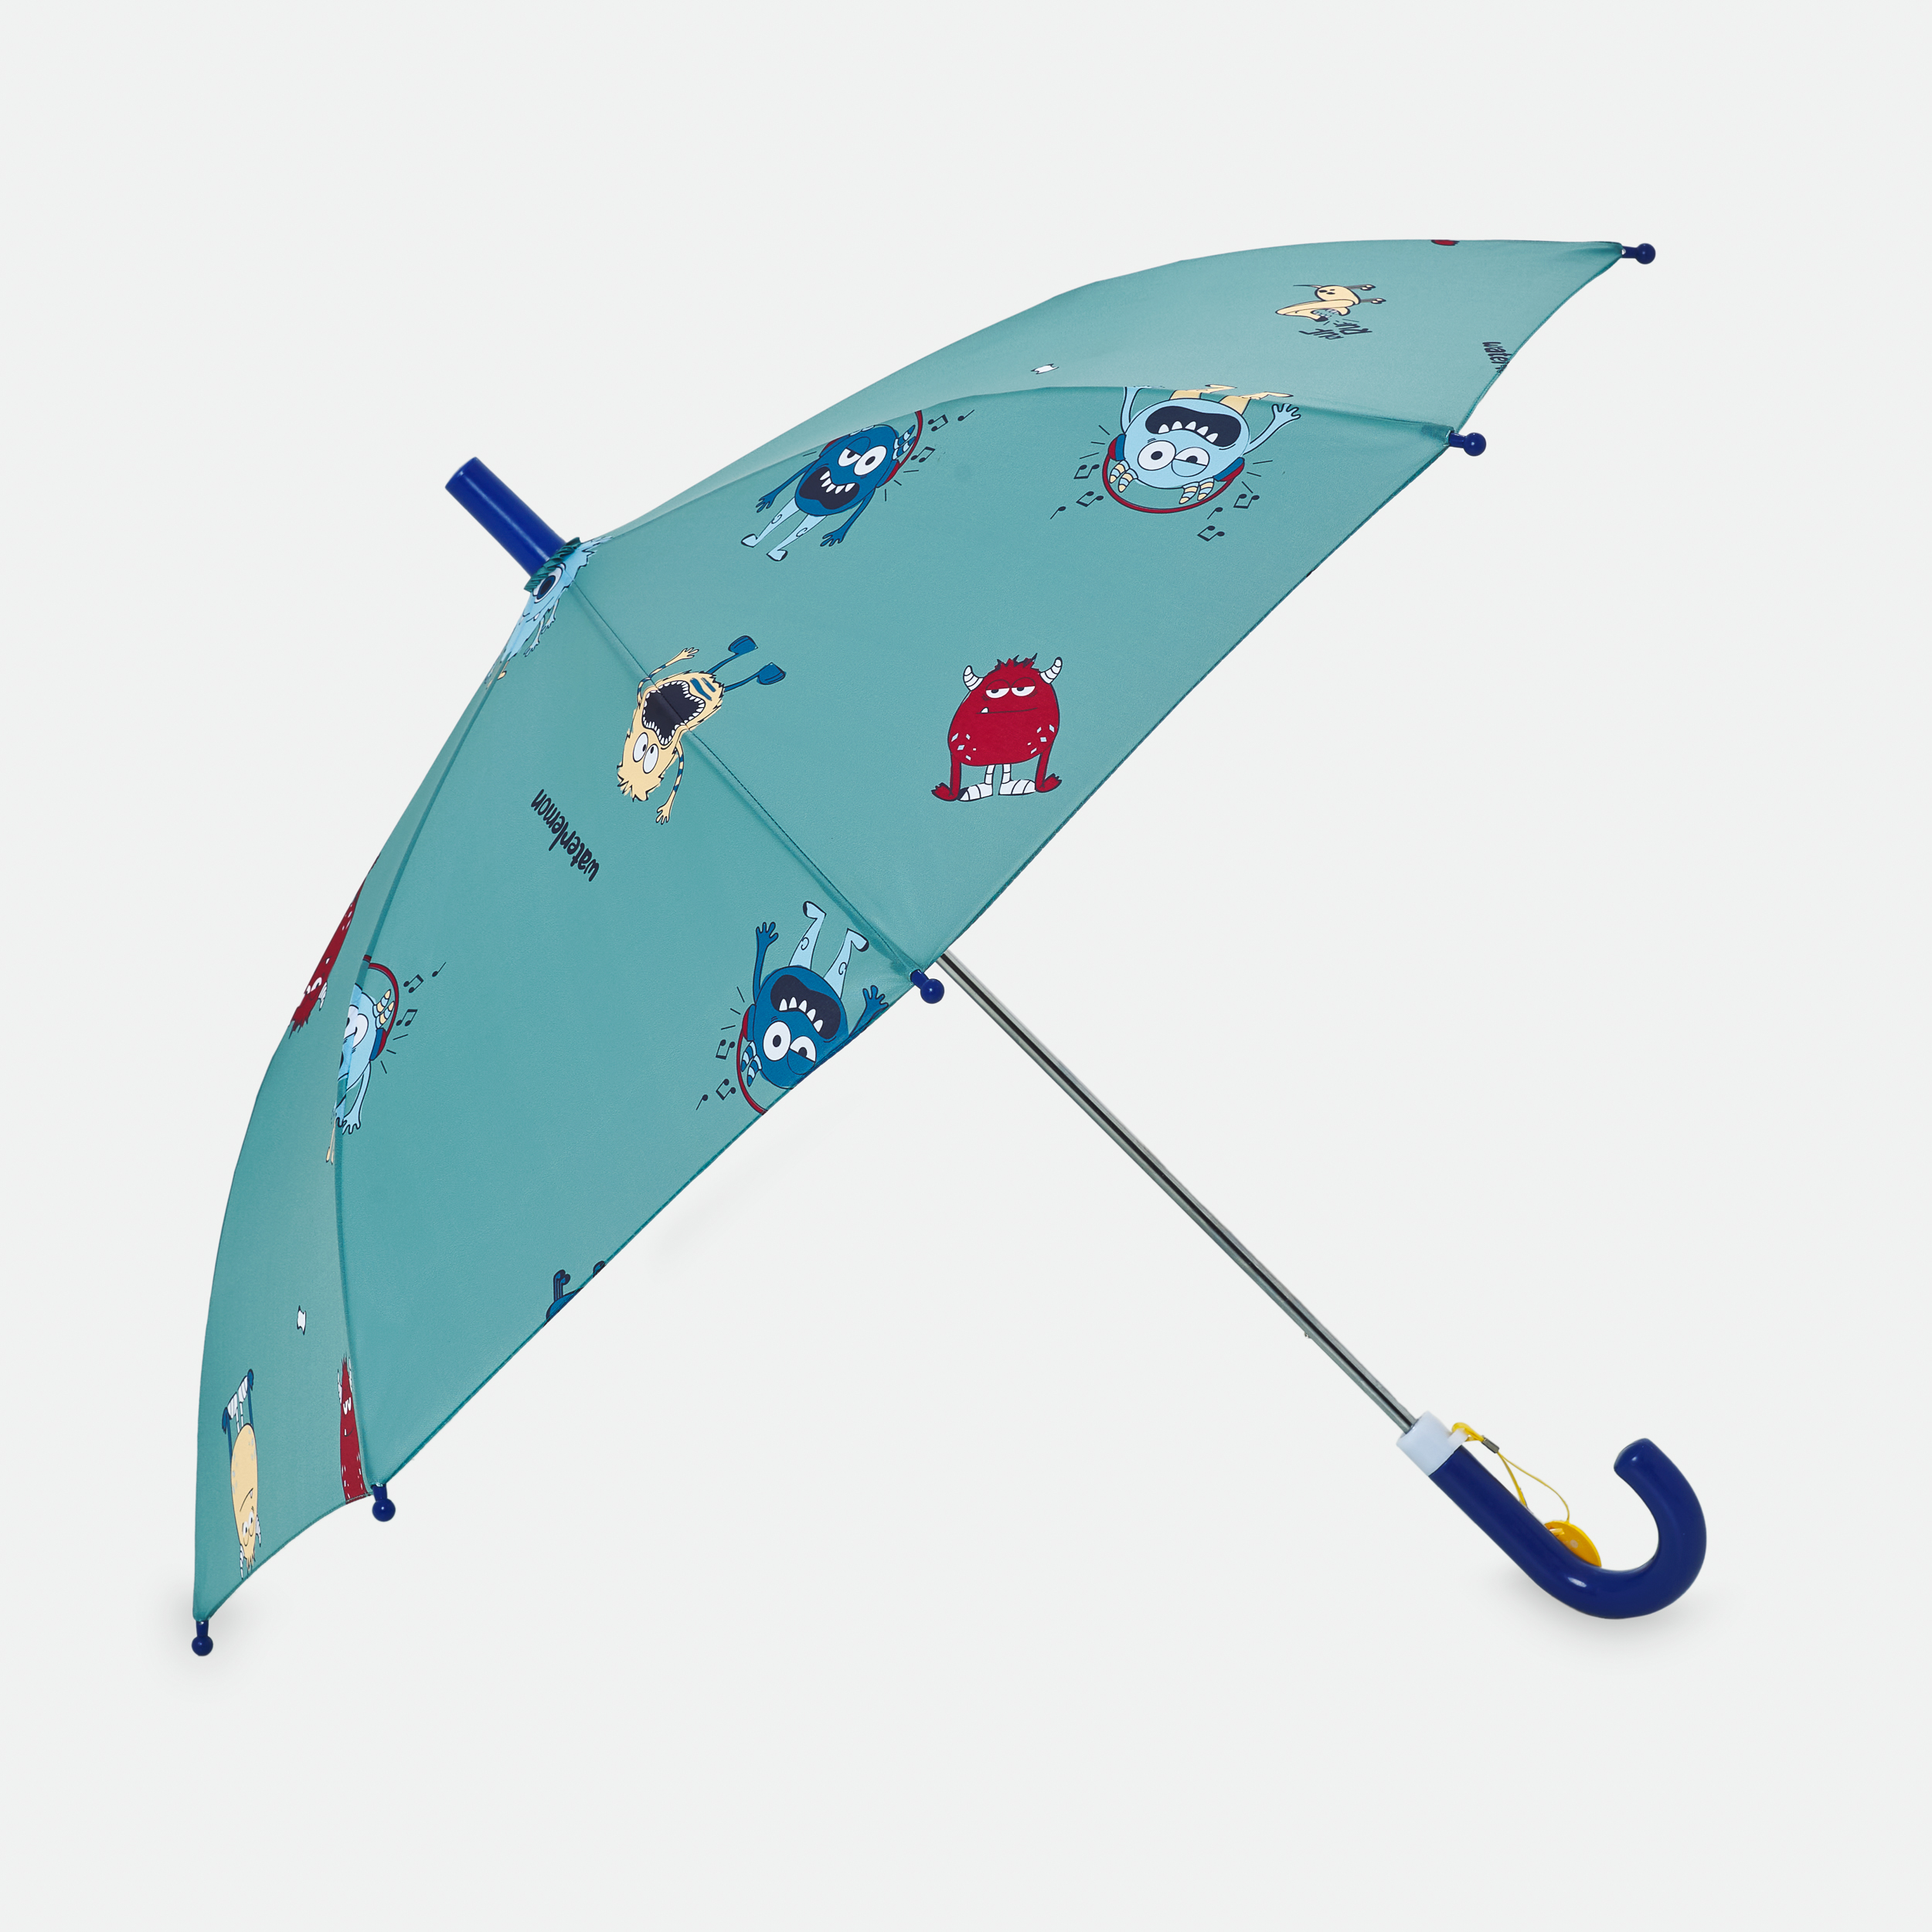   Paraguas inf waterlemon 3702 